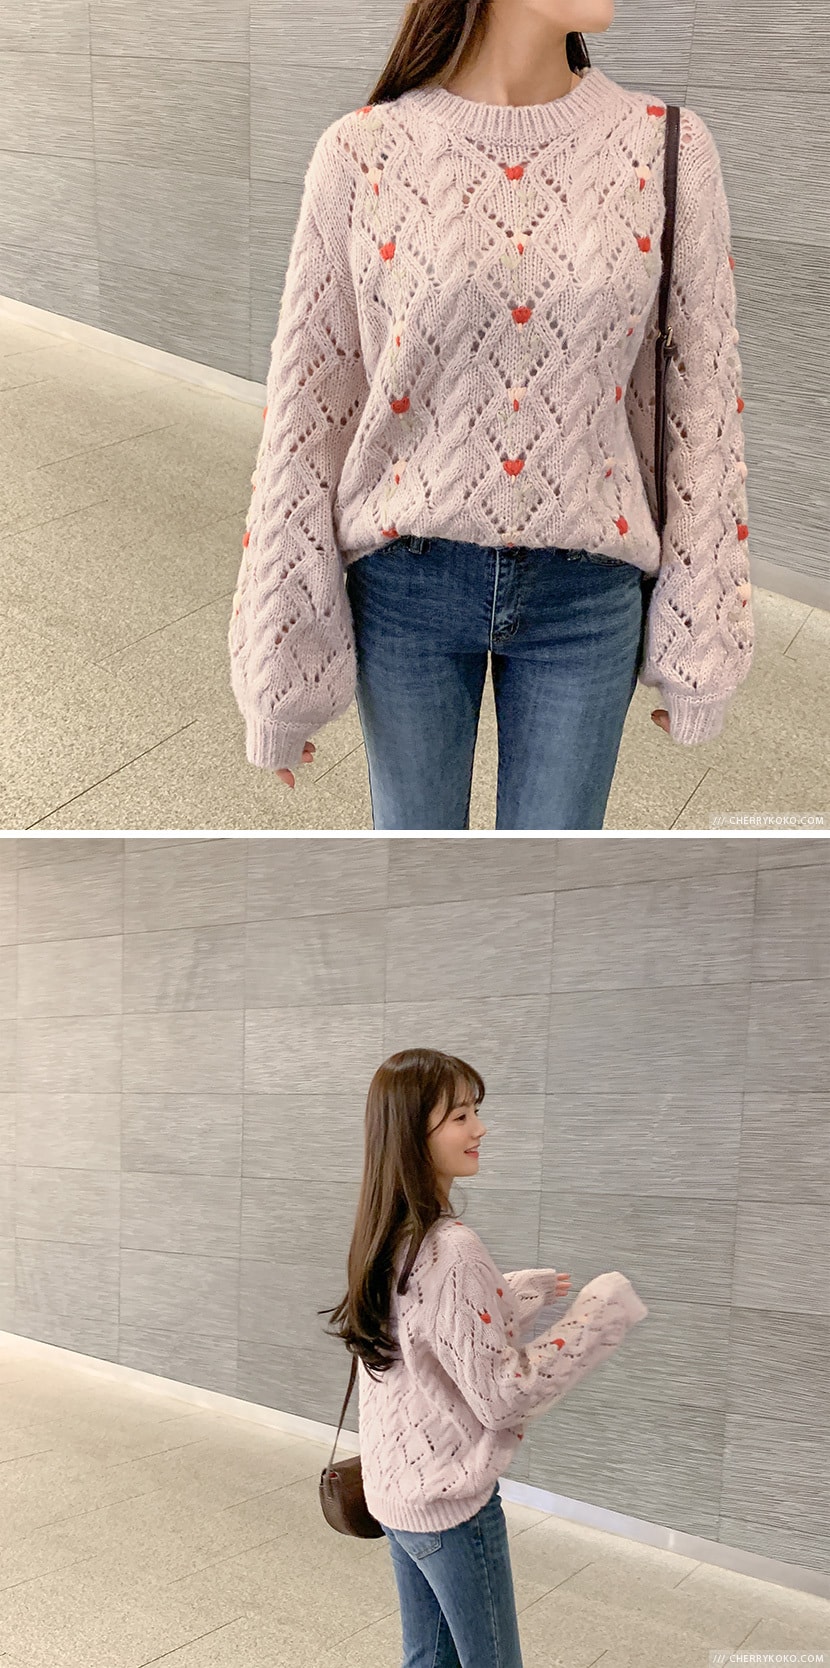 【韩国直邮】CHERRYKOKO 韩国甜美方格红心点缀针织衫 粉色 FREE